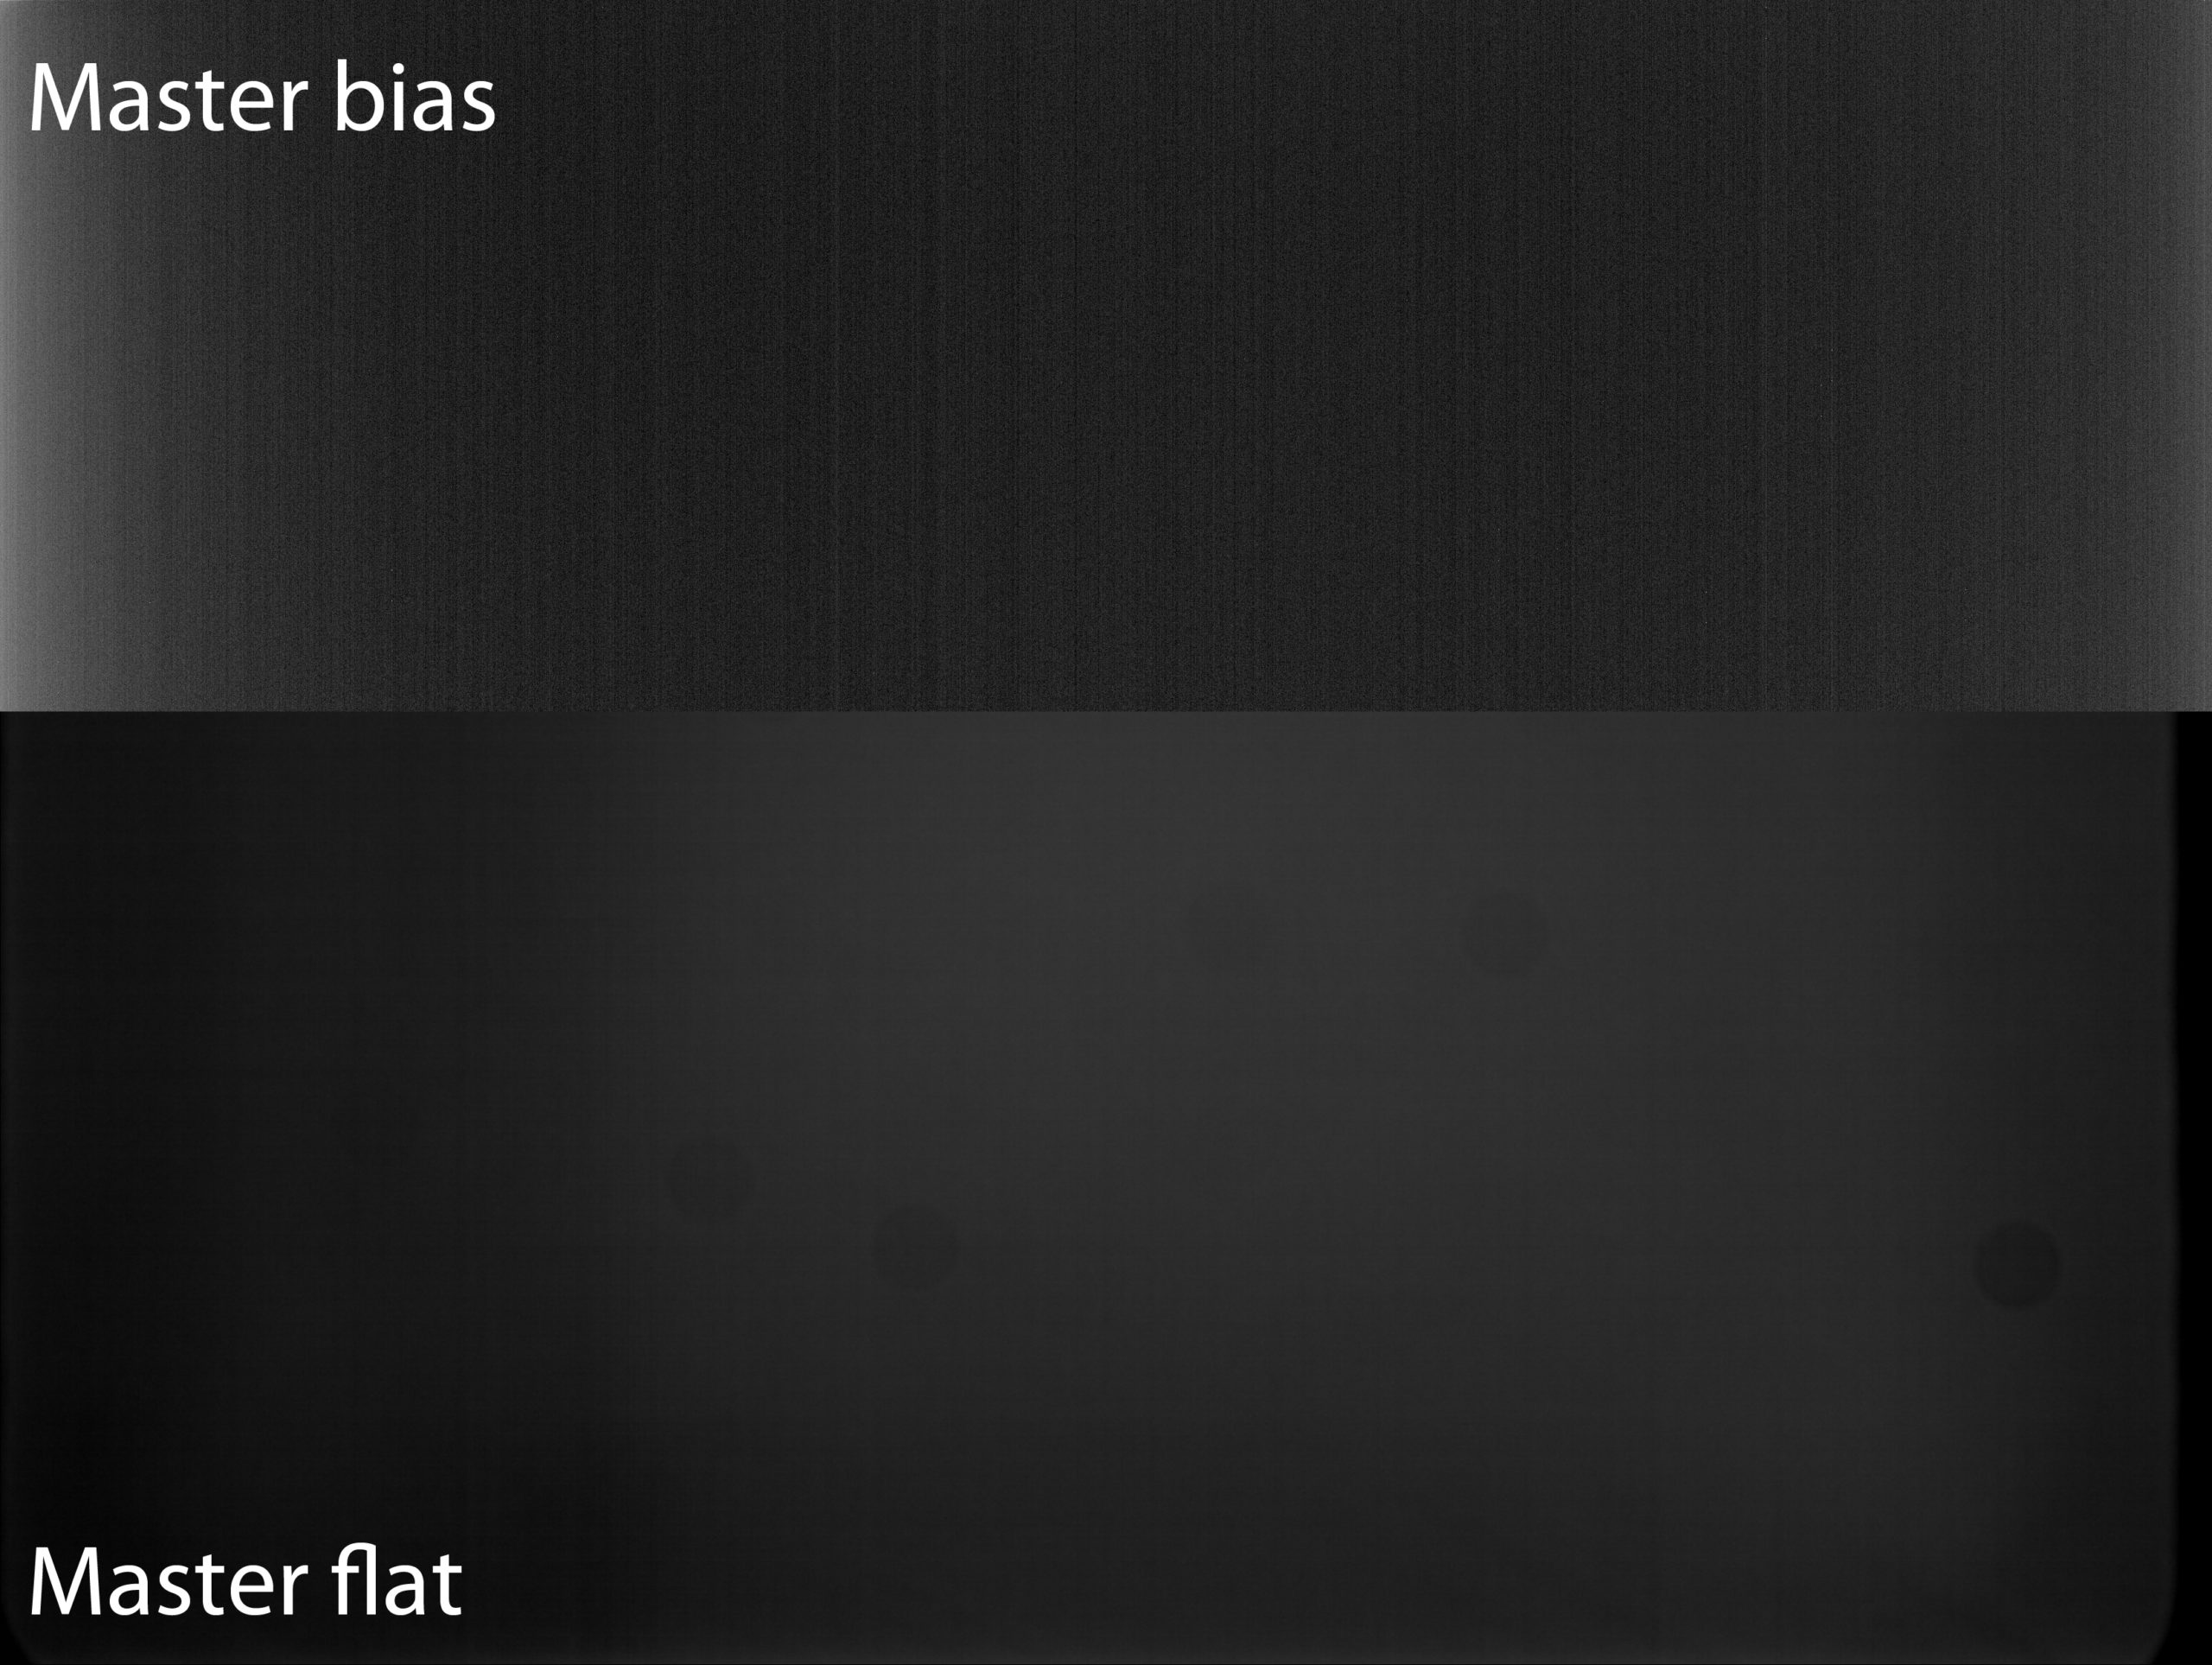 Master bias and flat